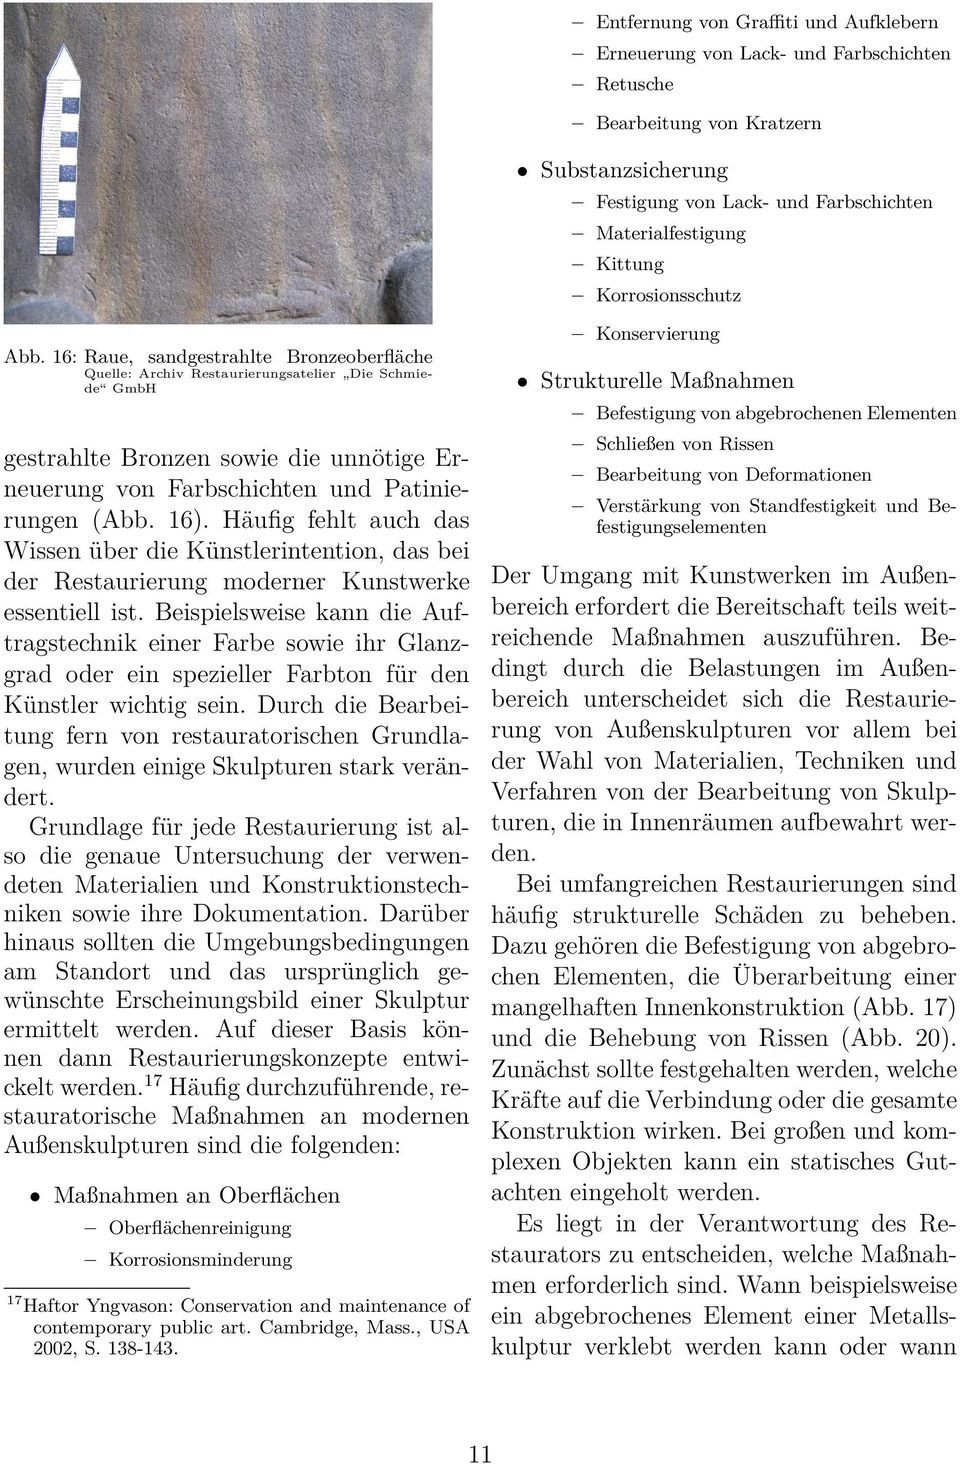 16: Raue, sandgestrahlte Bronzeoberfläche Quelle: Archiv Restaurierungsatelier Die Schmiede GmbH gestrahlte Bronzen sowie die unnötige Erneuerung von Farbschichten und Patinierungen (Abb. 16).